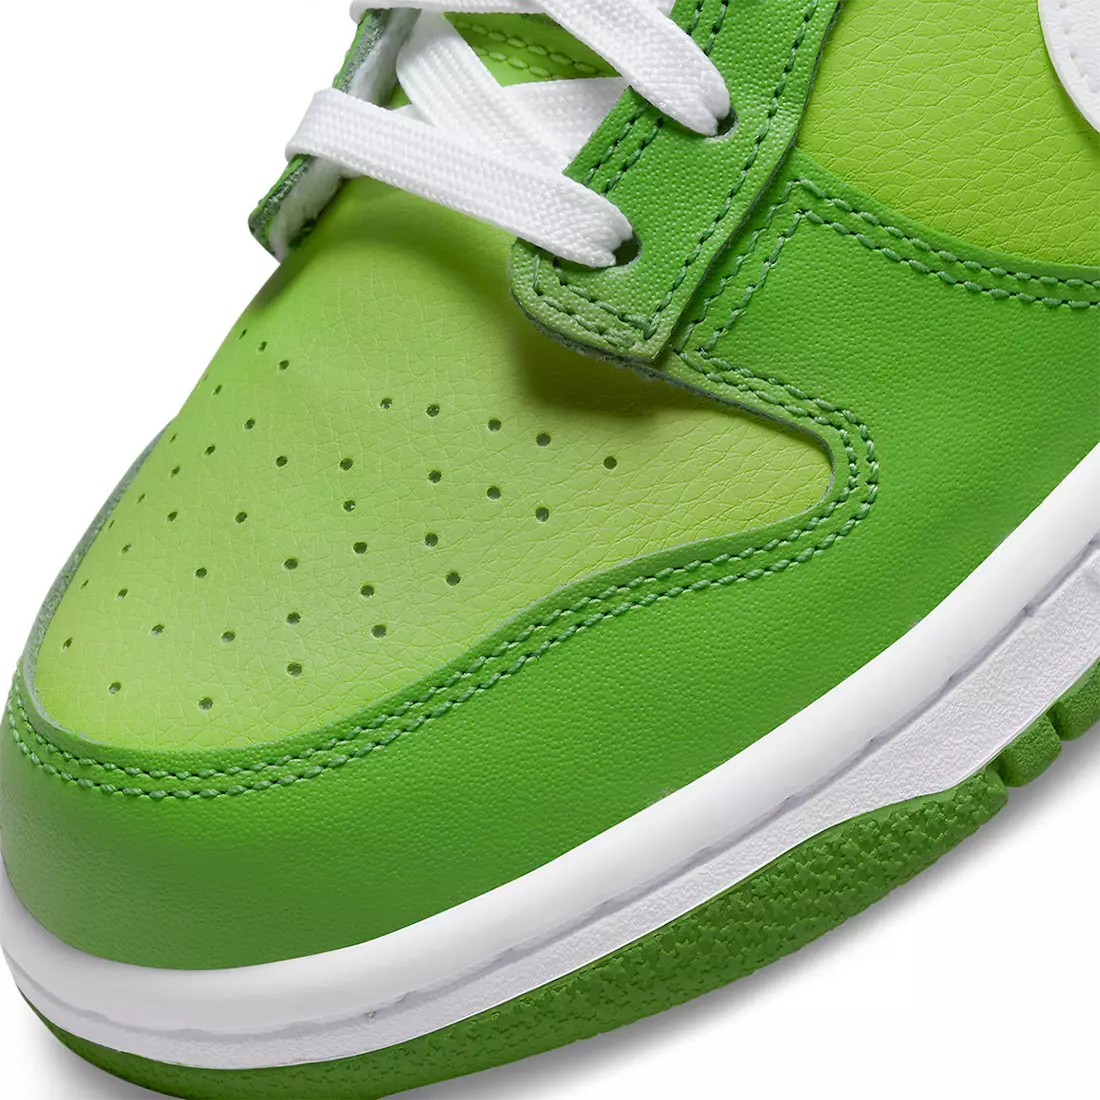 Nike Dunk Low Verdes Blancas DJ6188-301 Fecha de lanzamiento